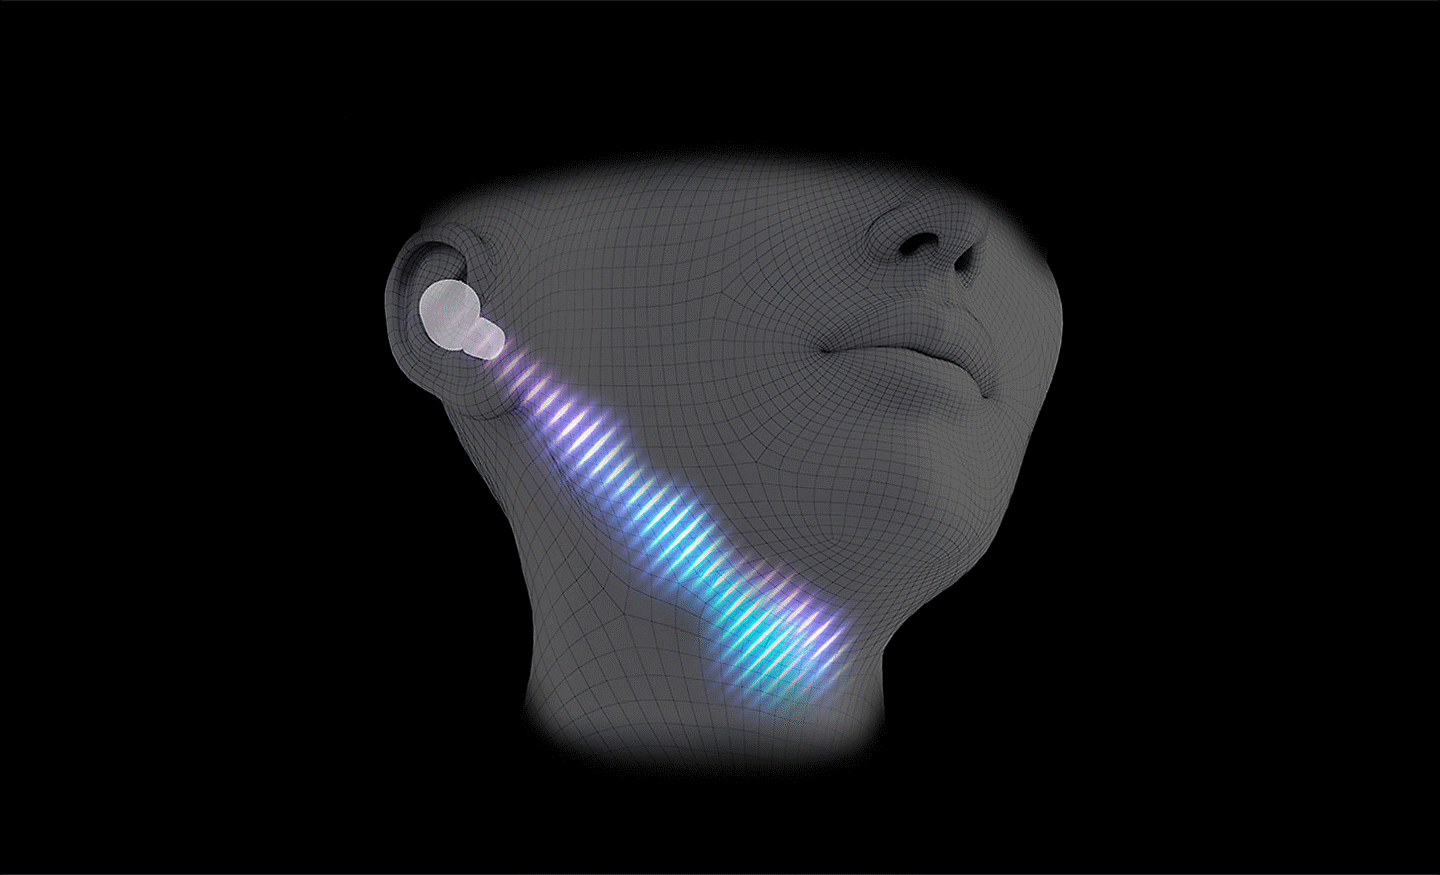 Computergeneriertes Bild eines Kopfes mit aufgesetzten Kopfhörern und einer diagonalen Schallwellenlinie vom Ohr zum Hals